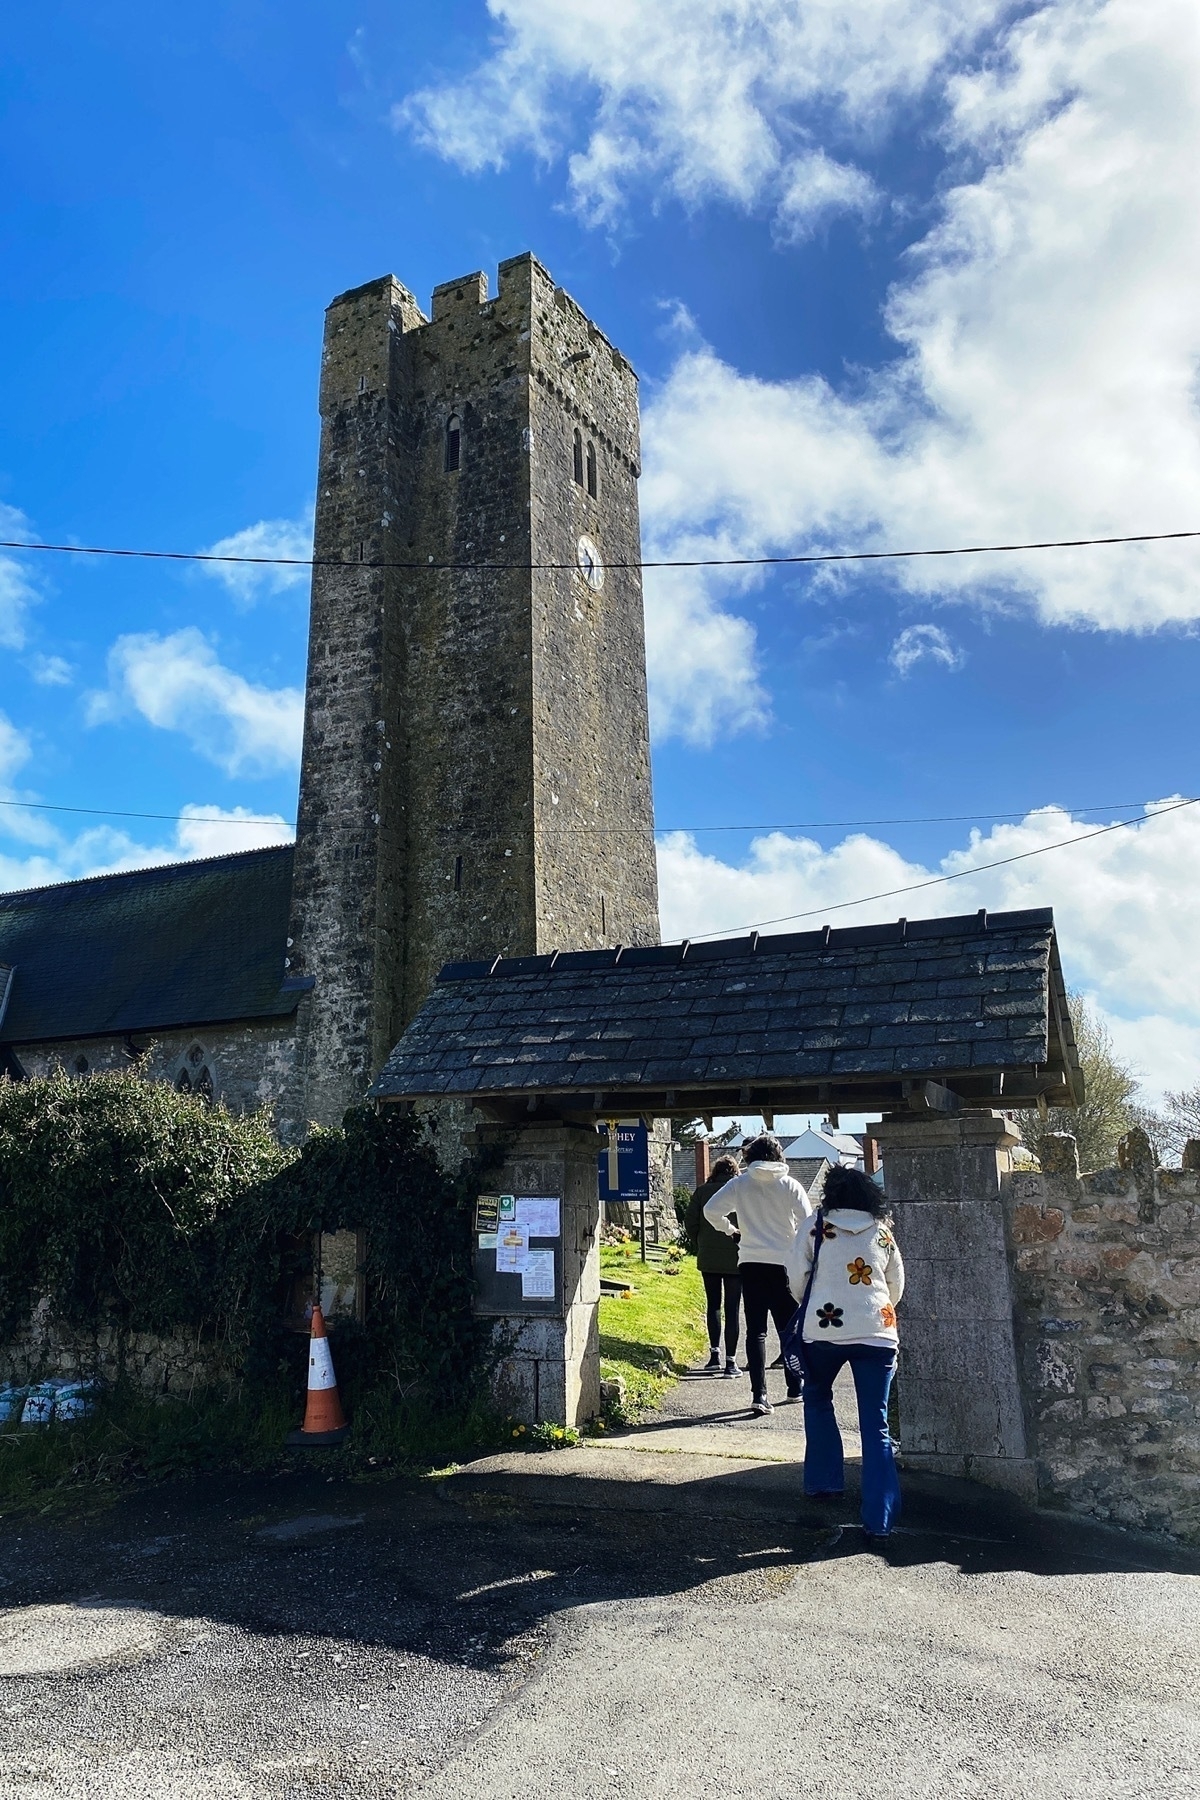 Three people walking through church gate towards a stone church tower